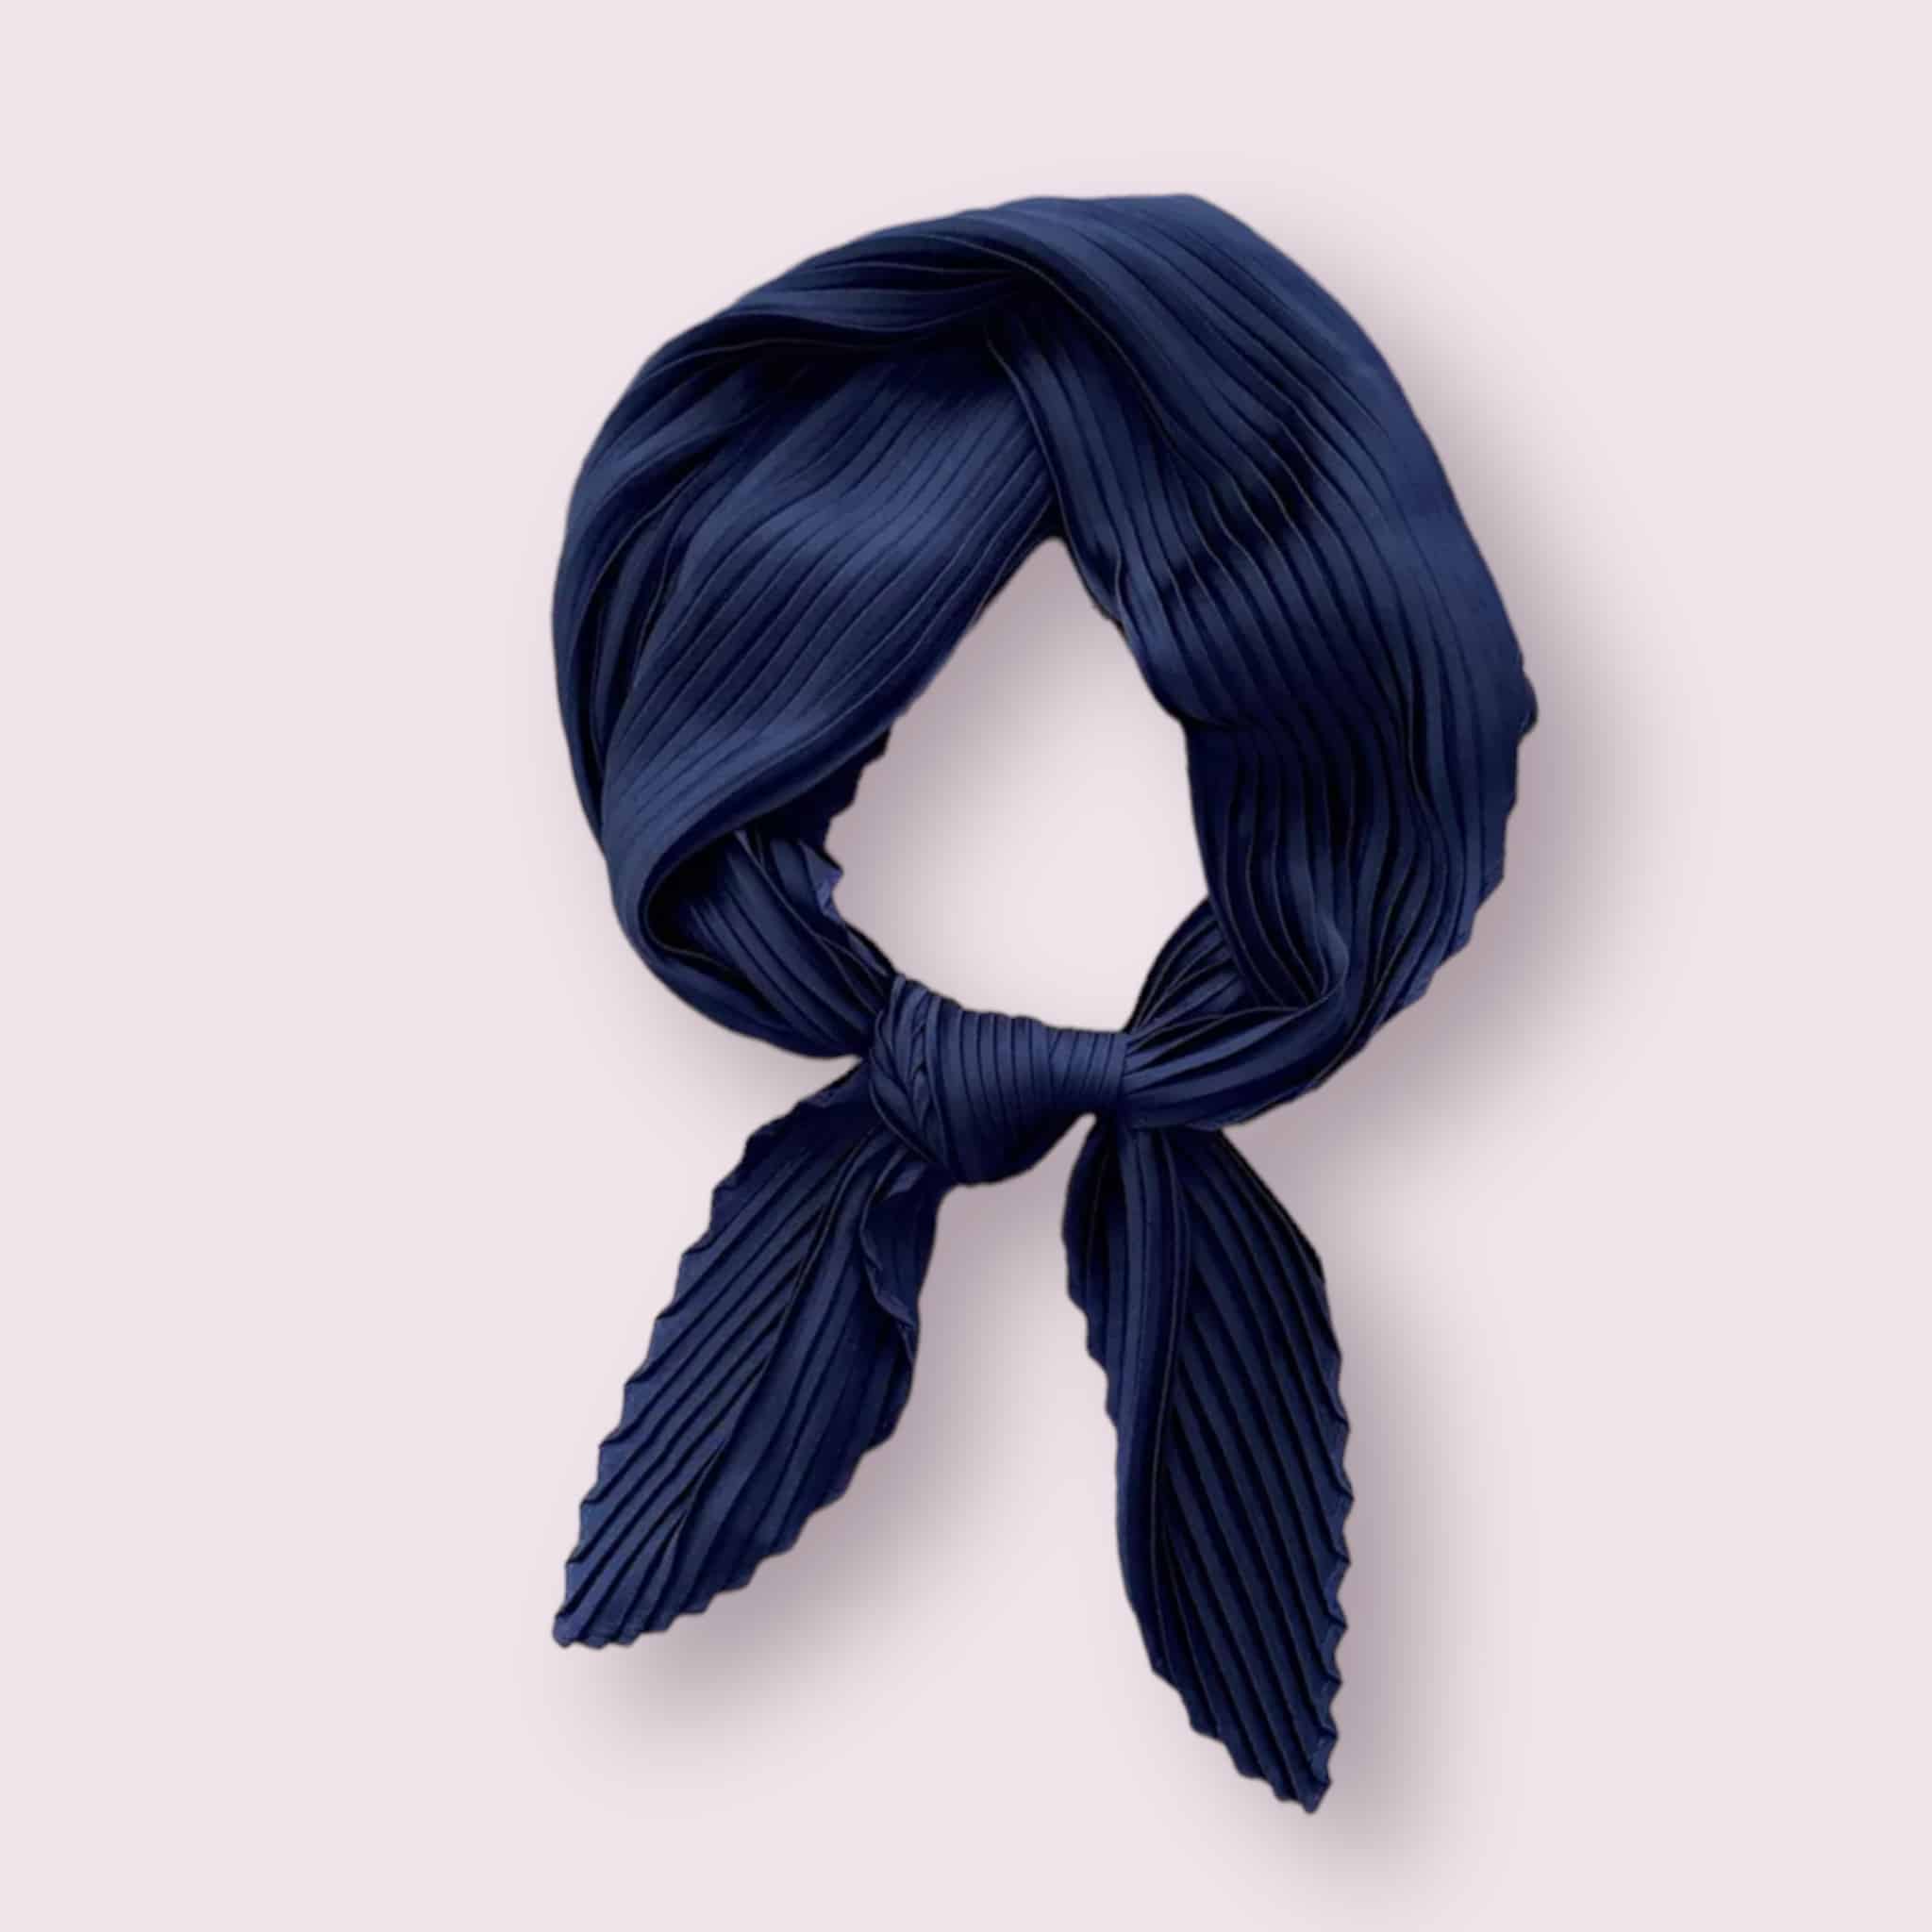 Élégant foulard en satin de couleur bleu nuit, délicatement plissé.